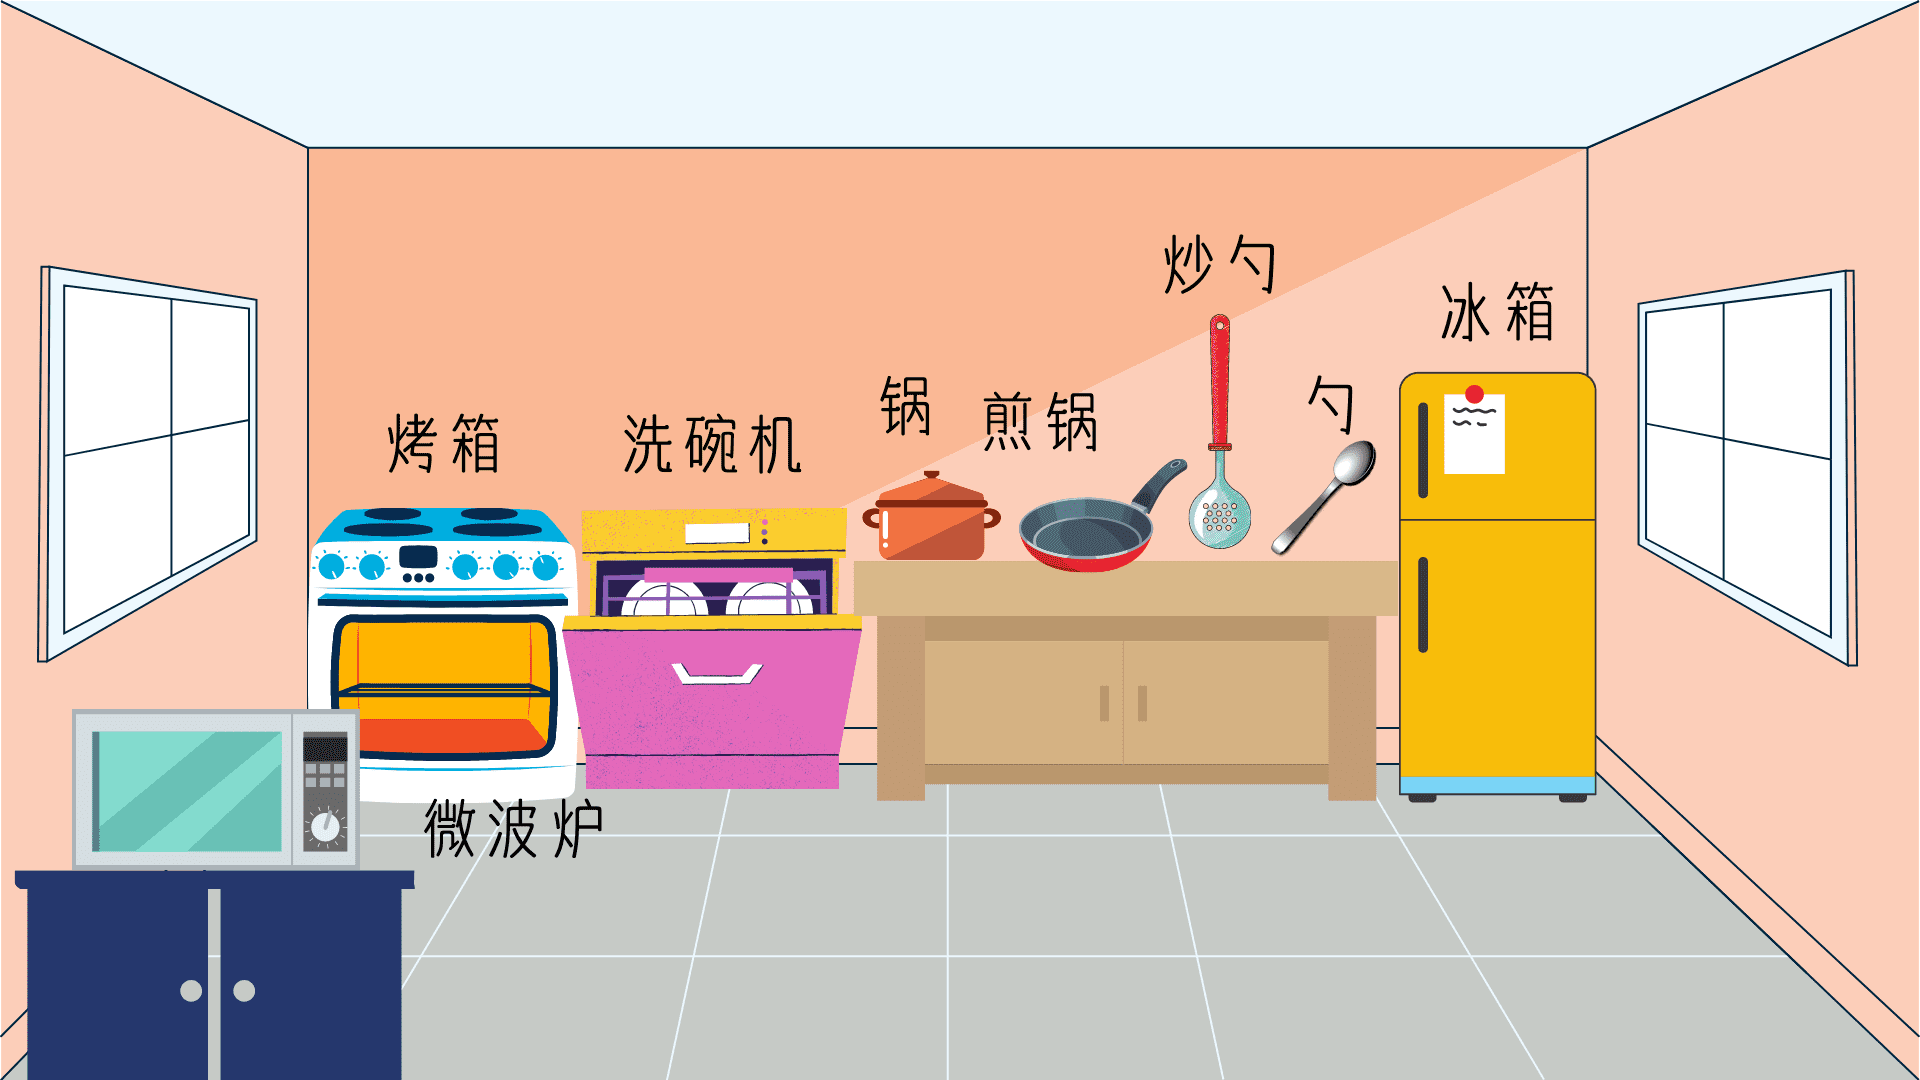 แบบทดสอบคำศัพท์ภาษาจีน เครื่องครัว